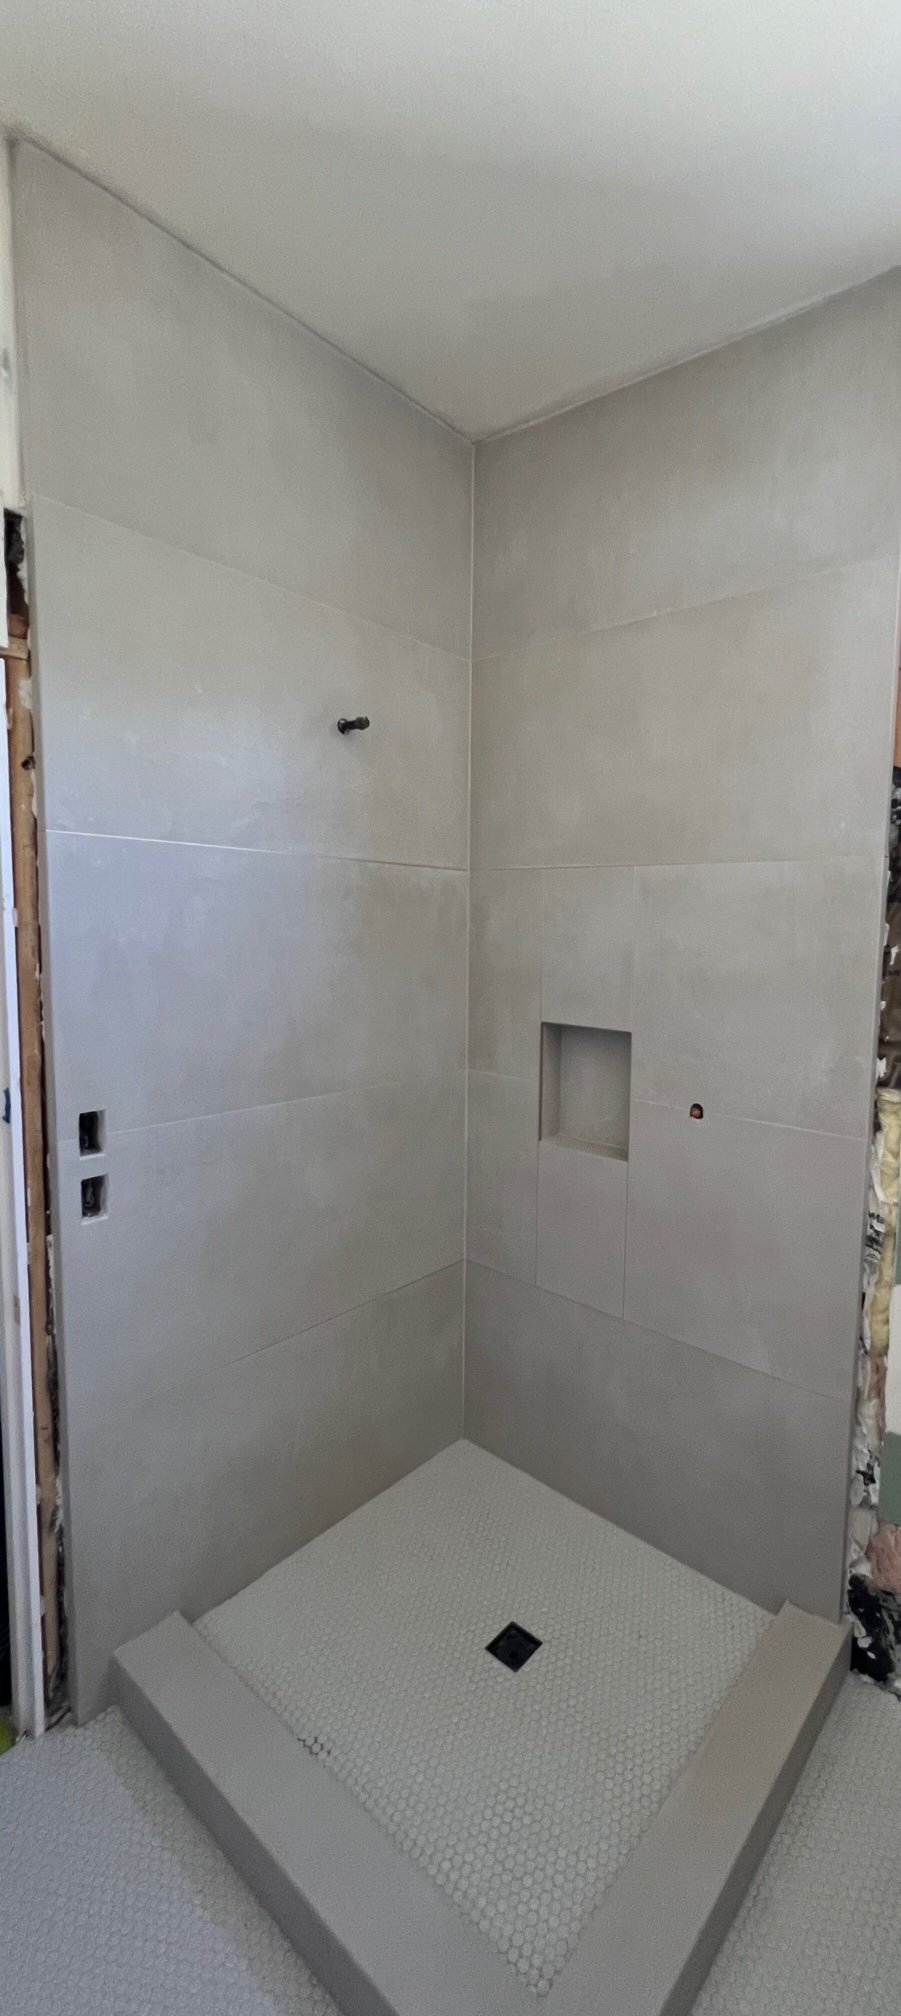 Culver City Bathroom Installation